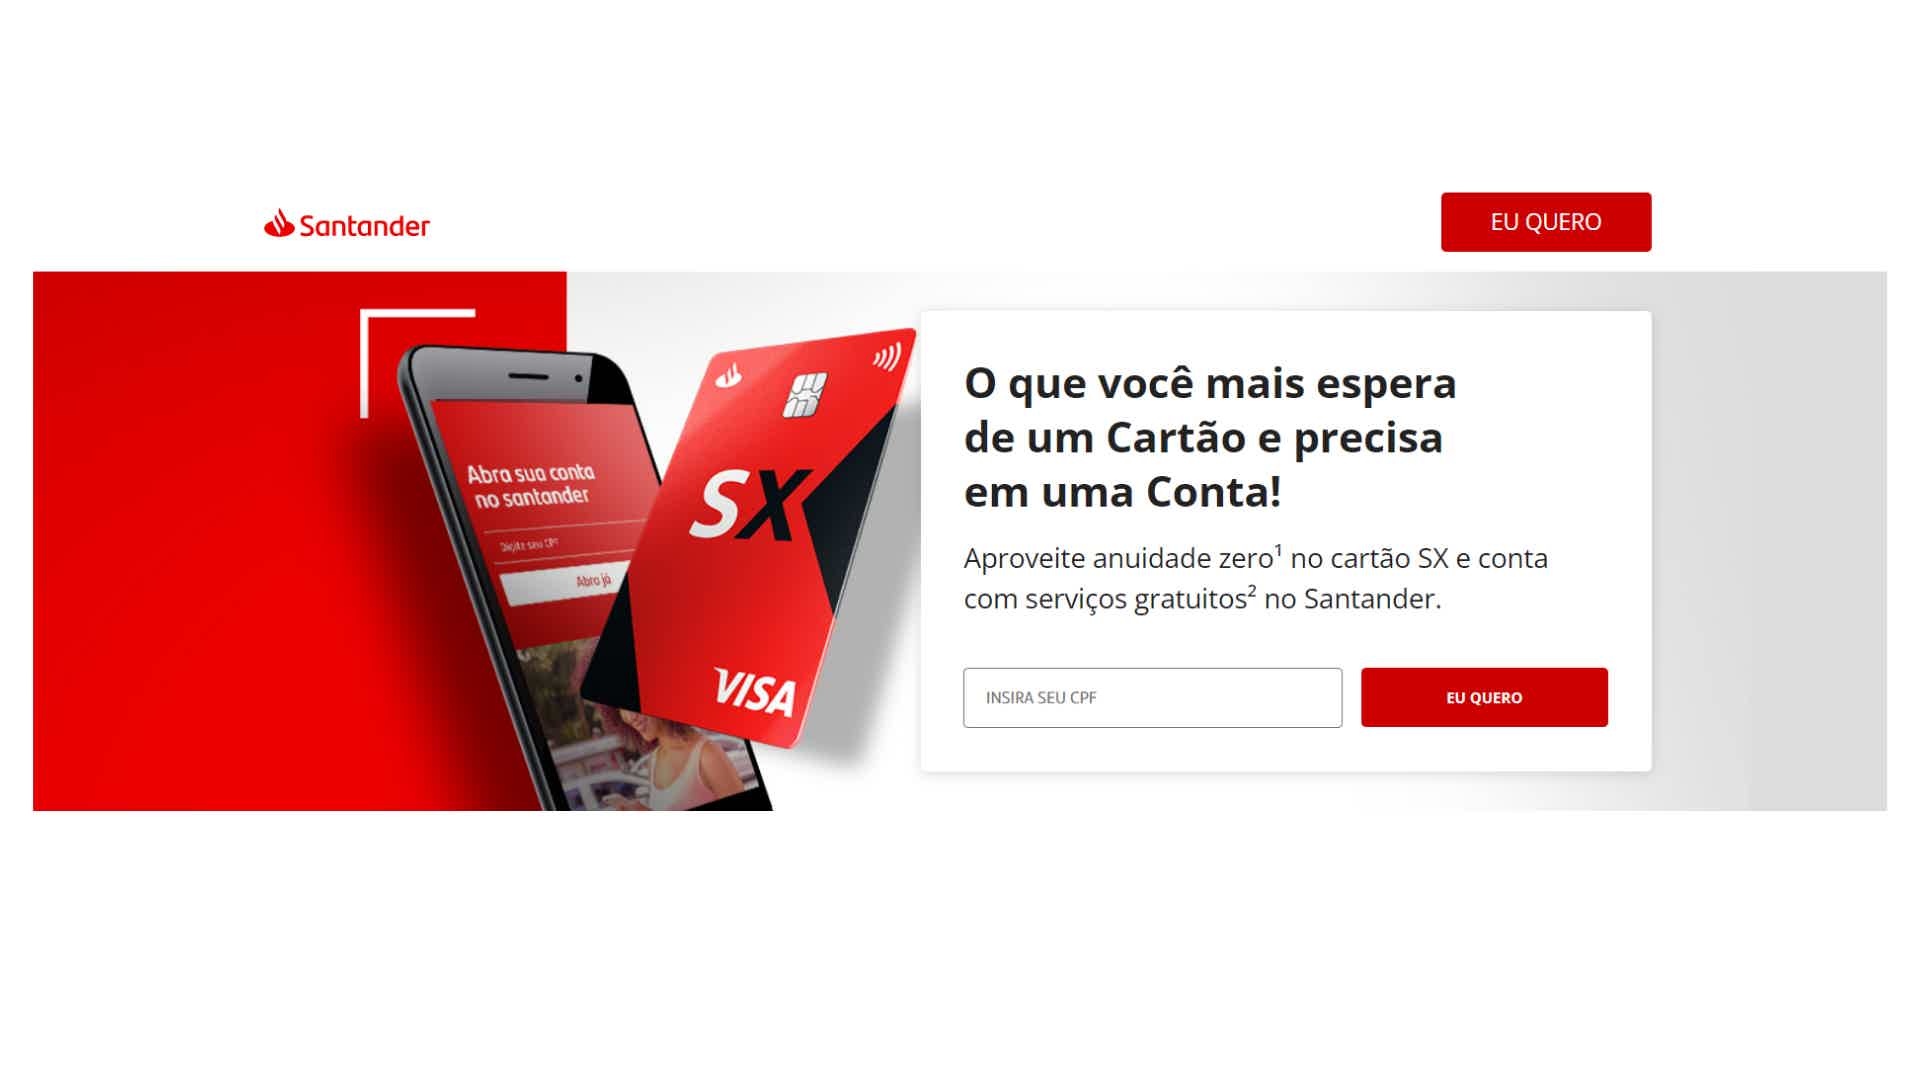 Solicite seu cartão Santander SX e aproveite anuidade ZERO gastando R$100/mês ou cadastrando seu CPF como chave PIX. Fonte: Santander.